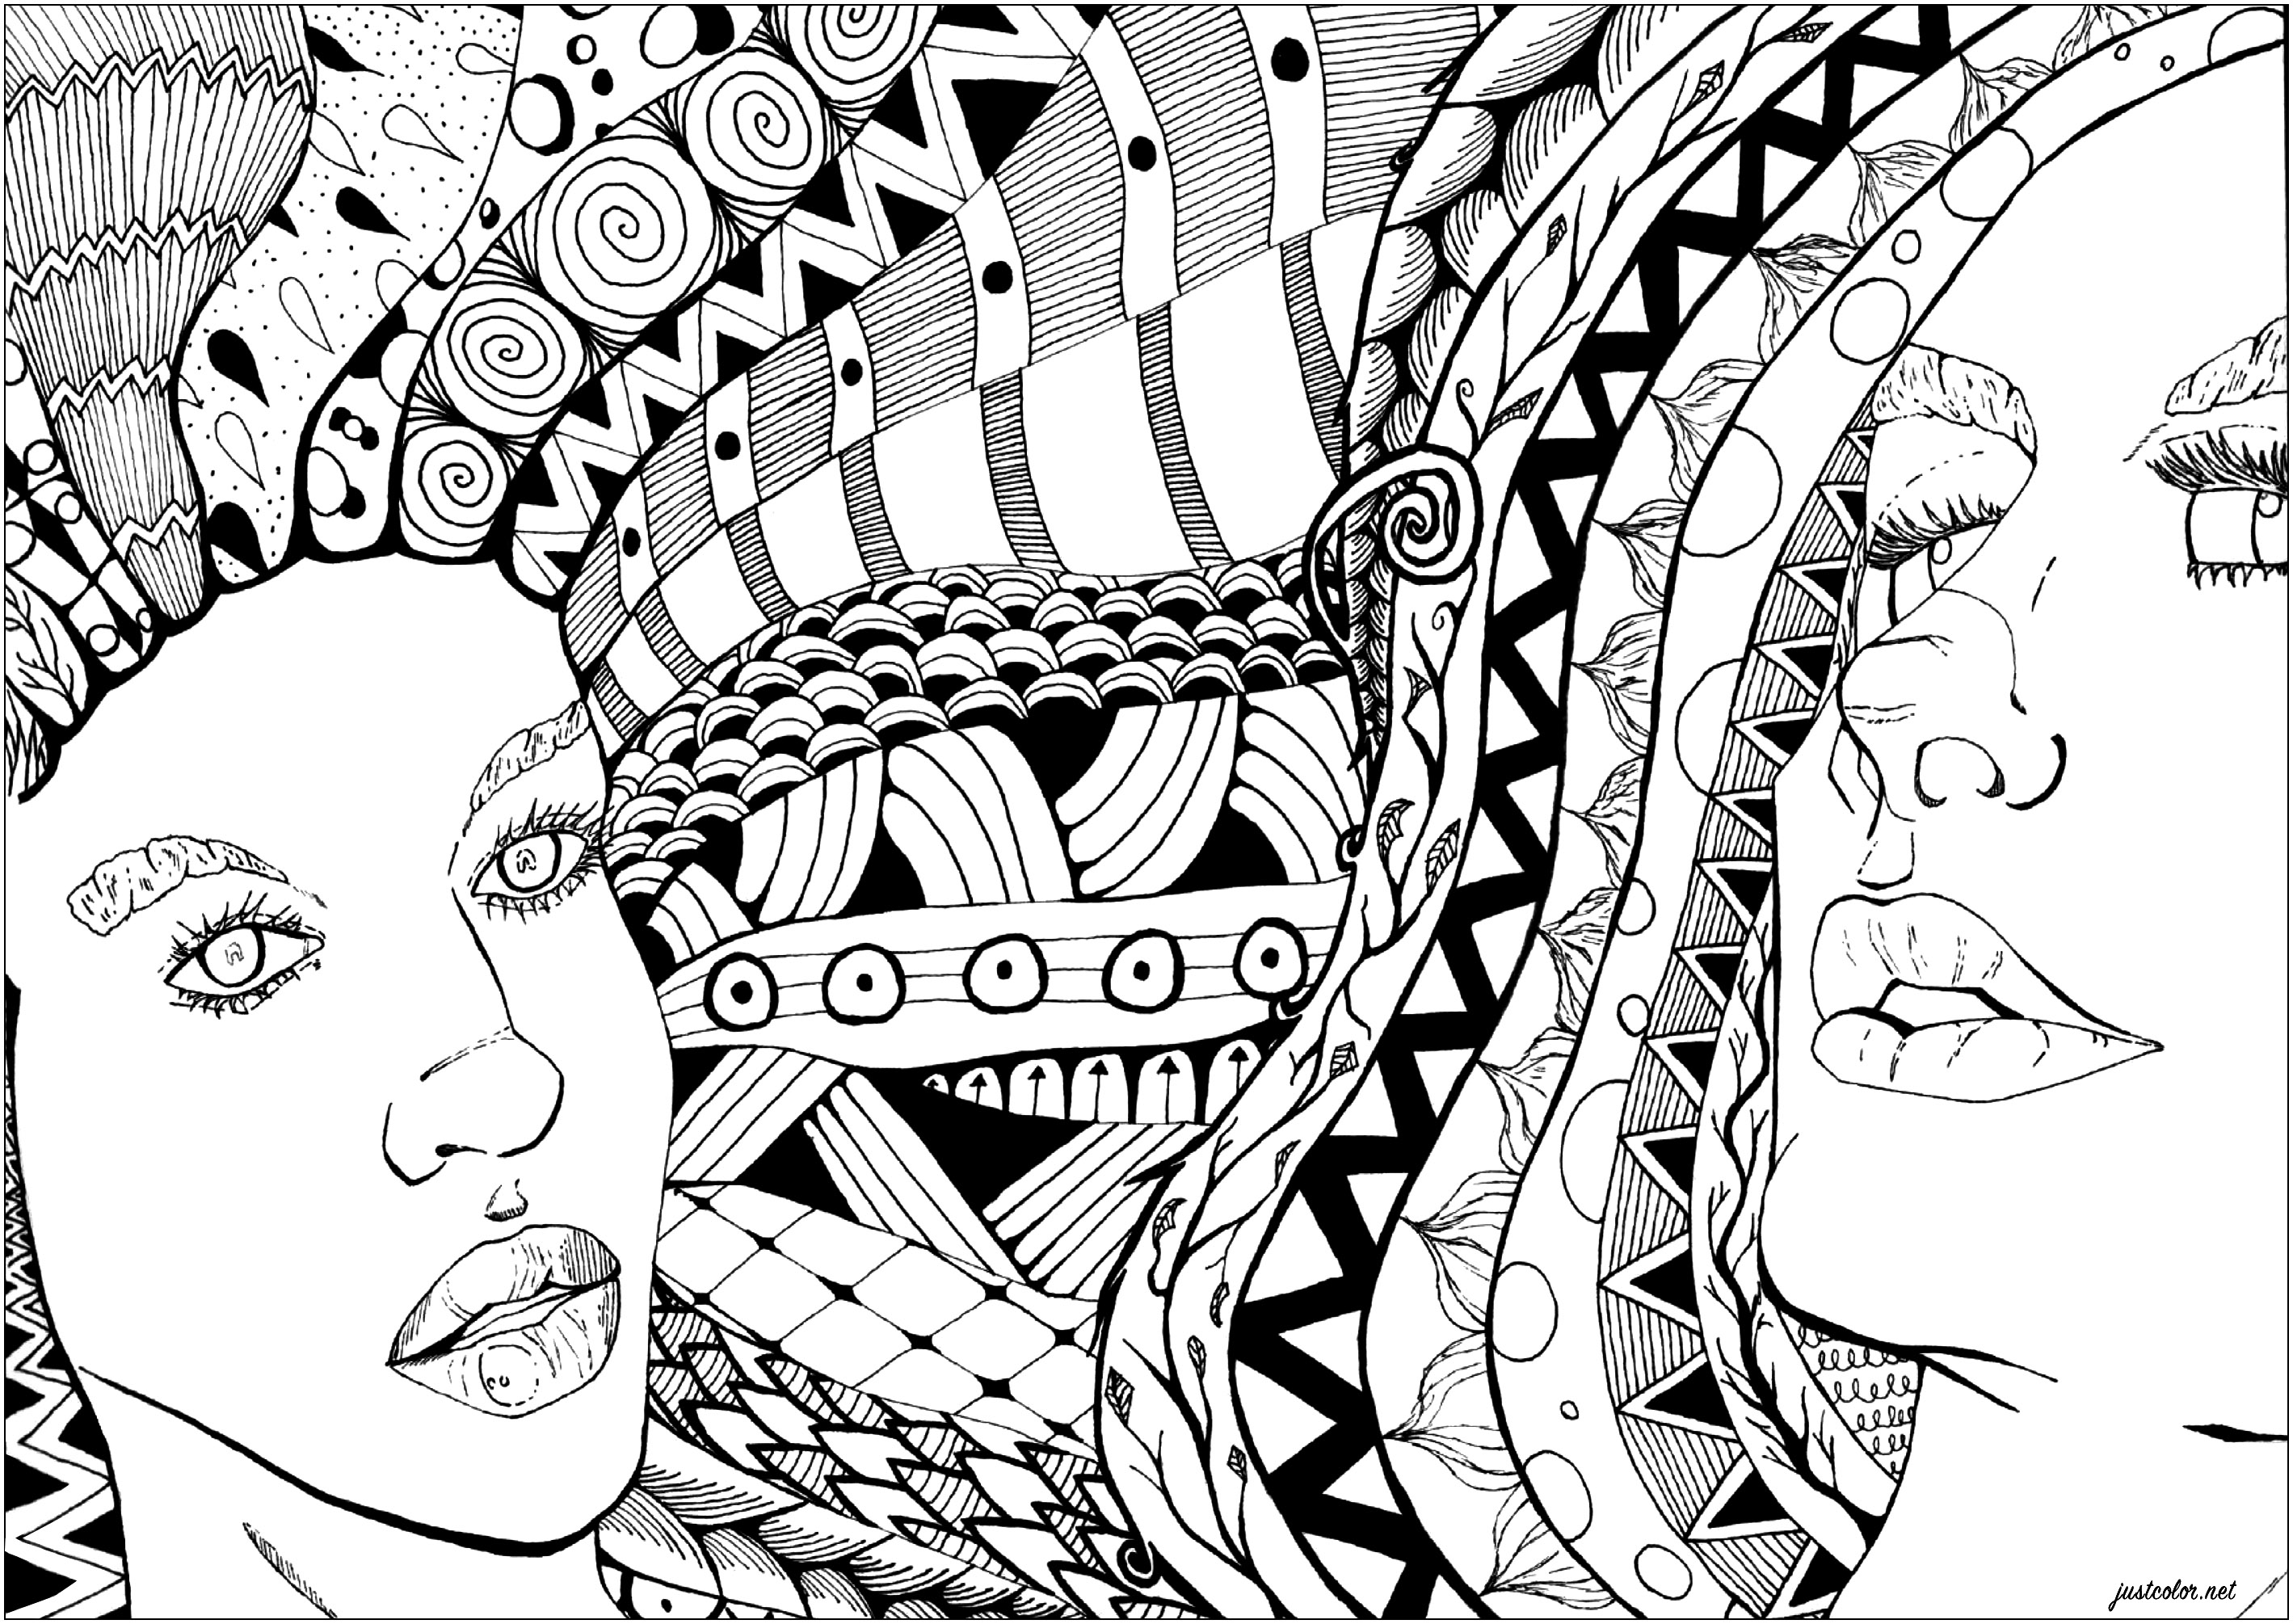 Um belo desenho aguarda as suas capacidades de colorir, apresentando dois rostos de mulheres de cabelo complexo com padrões desenhados no estilo Zentangle. Prepare-se para ser absorvido pelos detalhes fascinantes de cada fio e deixe a sua imaginação correr solta com as escolhas de cores para dar vida a estes belos retratos.